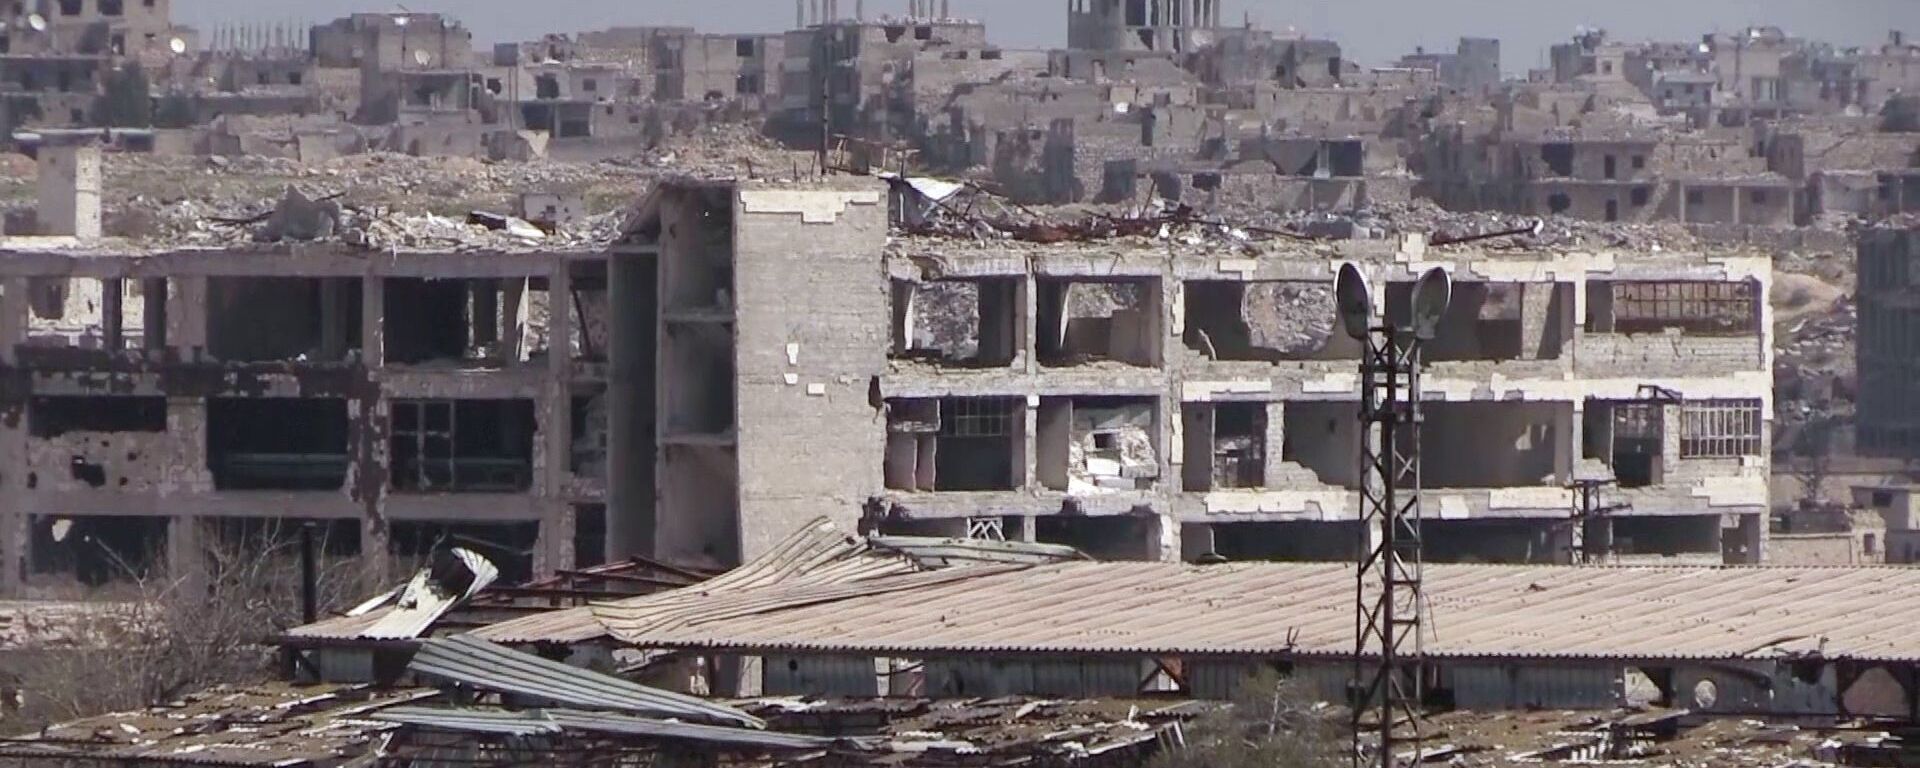 Сирийские власти начали восстанавливать район Эль-Хамдания на окраине города Алеппо - Sputnik Србија, 1920, 29.11.2022